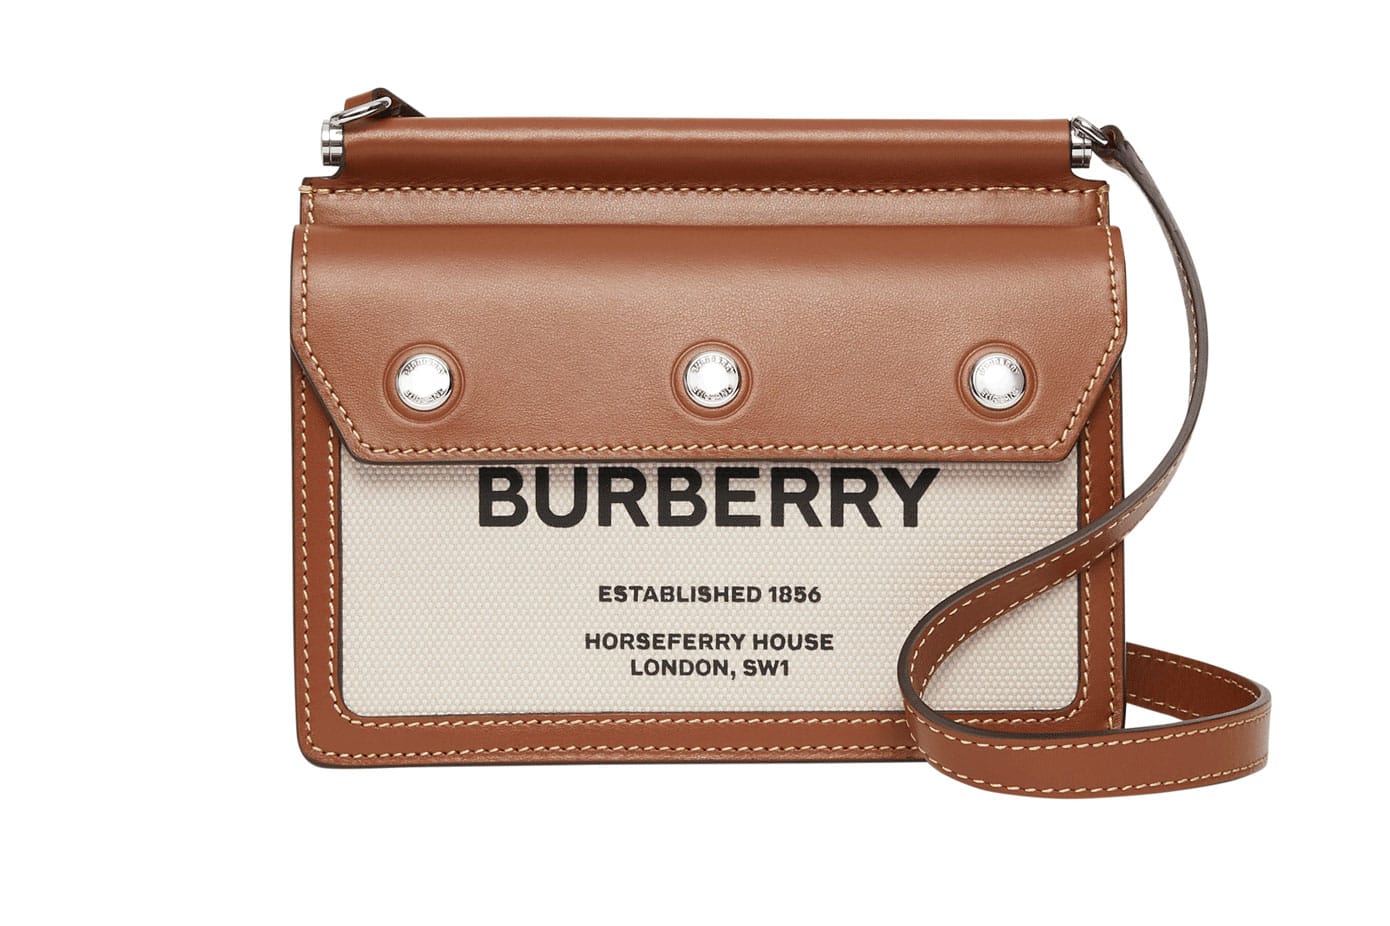 2019 burberry bag